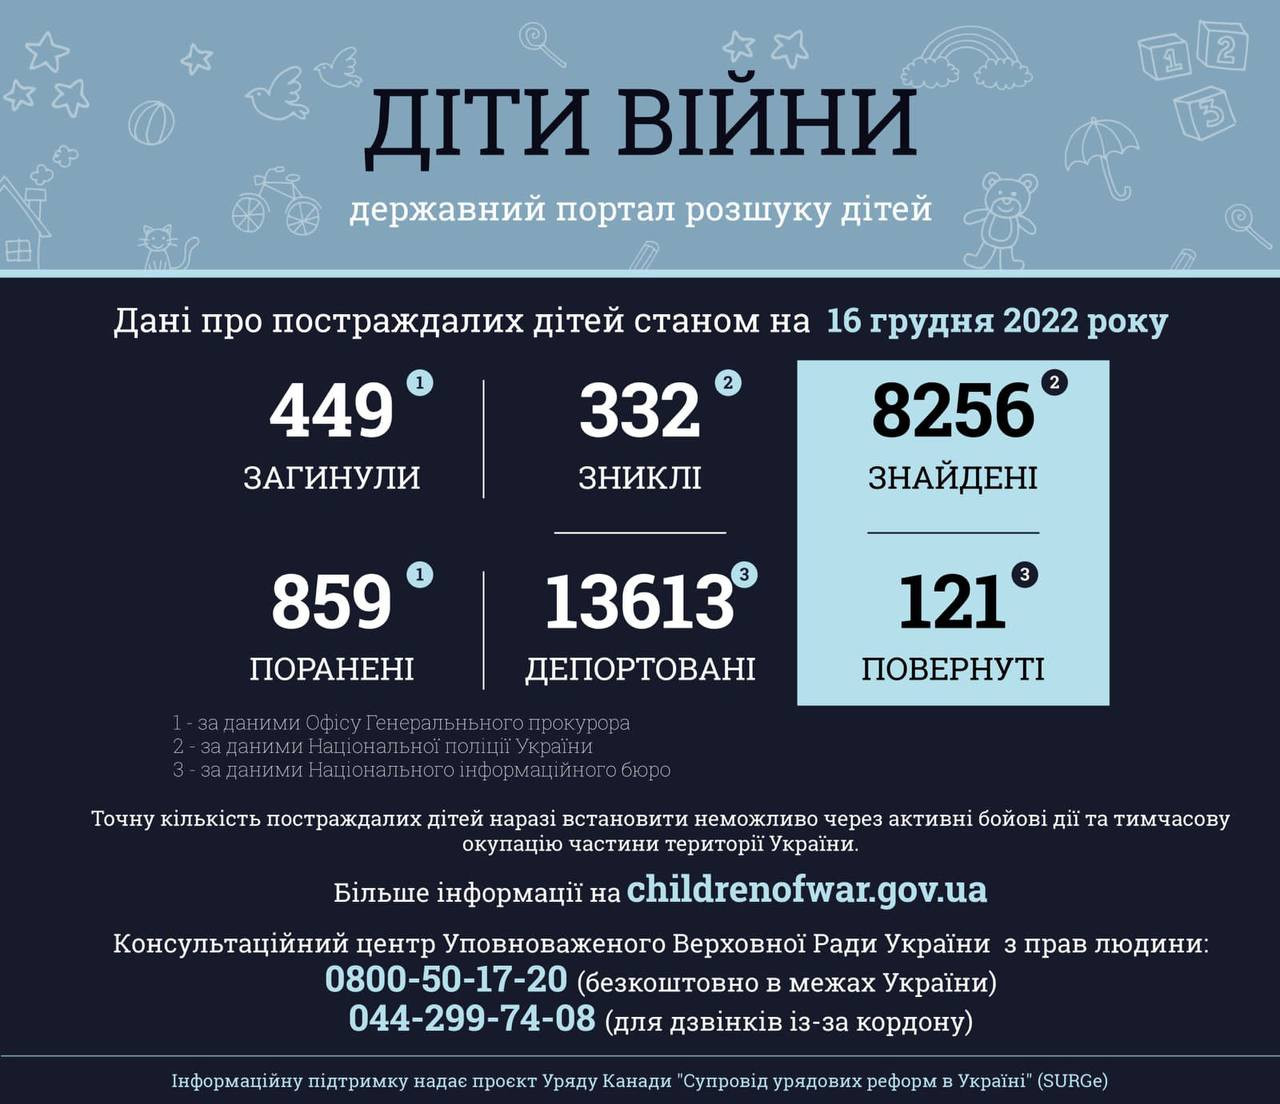 449 дітей загинуло та понад 859 поранено внаслідок збройної агресії рф в Україні - зображення